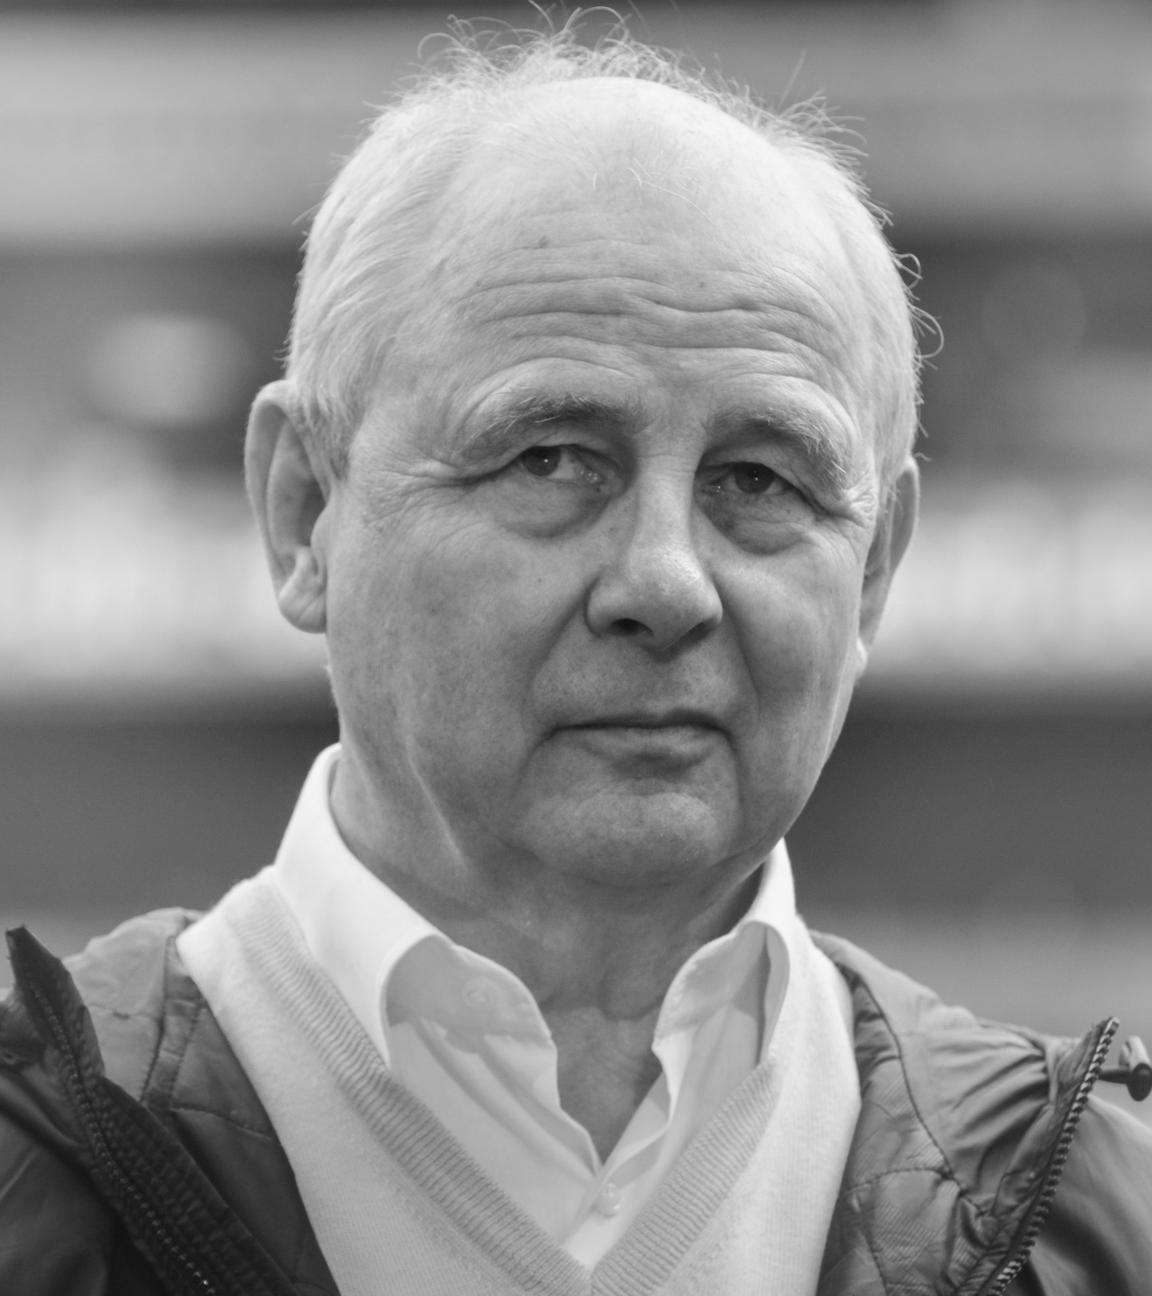 ARCHIV, 14.03.2015, Hessen, Frankfurt/Main: Die Frankfurter Spieler-Legende Bernd Hölzenbein vor dem Spiel. Hölzenbein ist mit 78 Jahren gestorben.